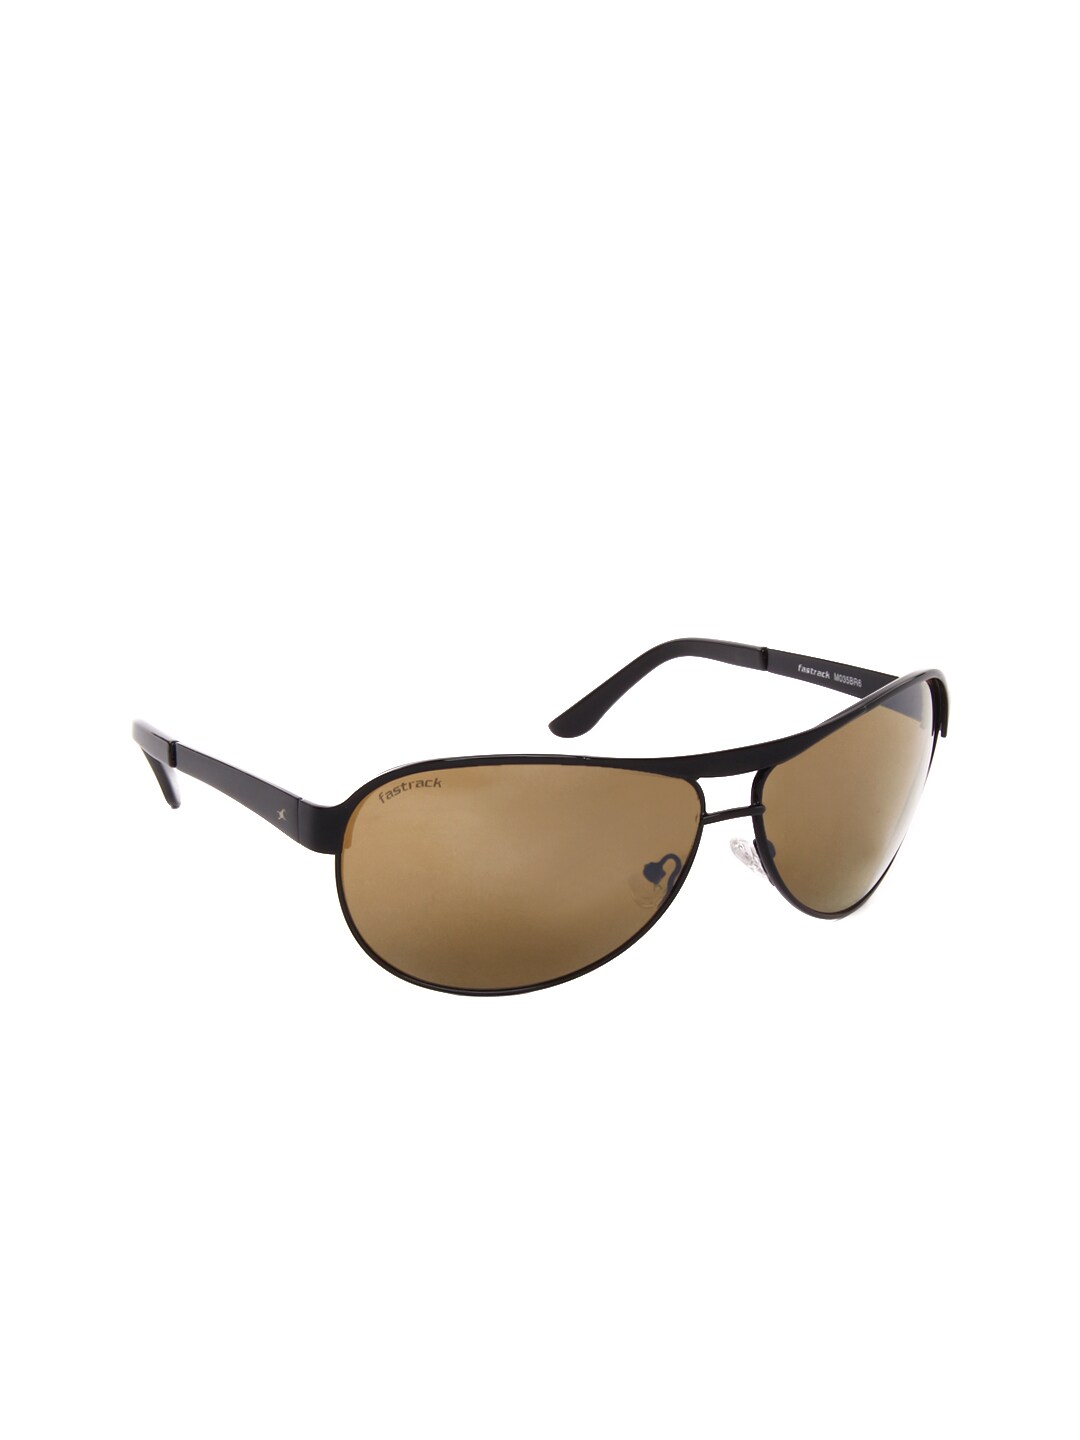 Fastrack Unisex Sunglasses M035BR6